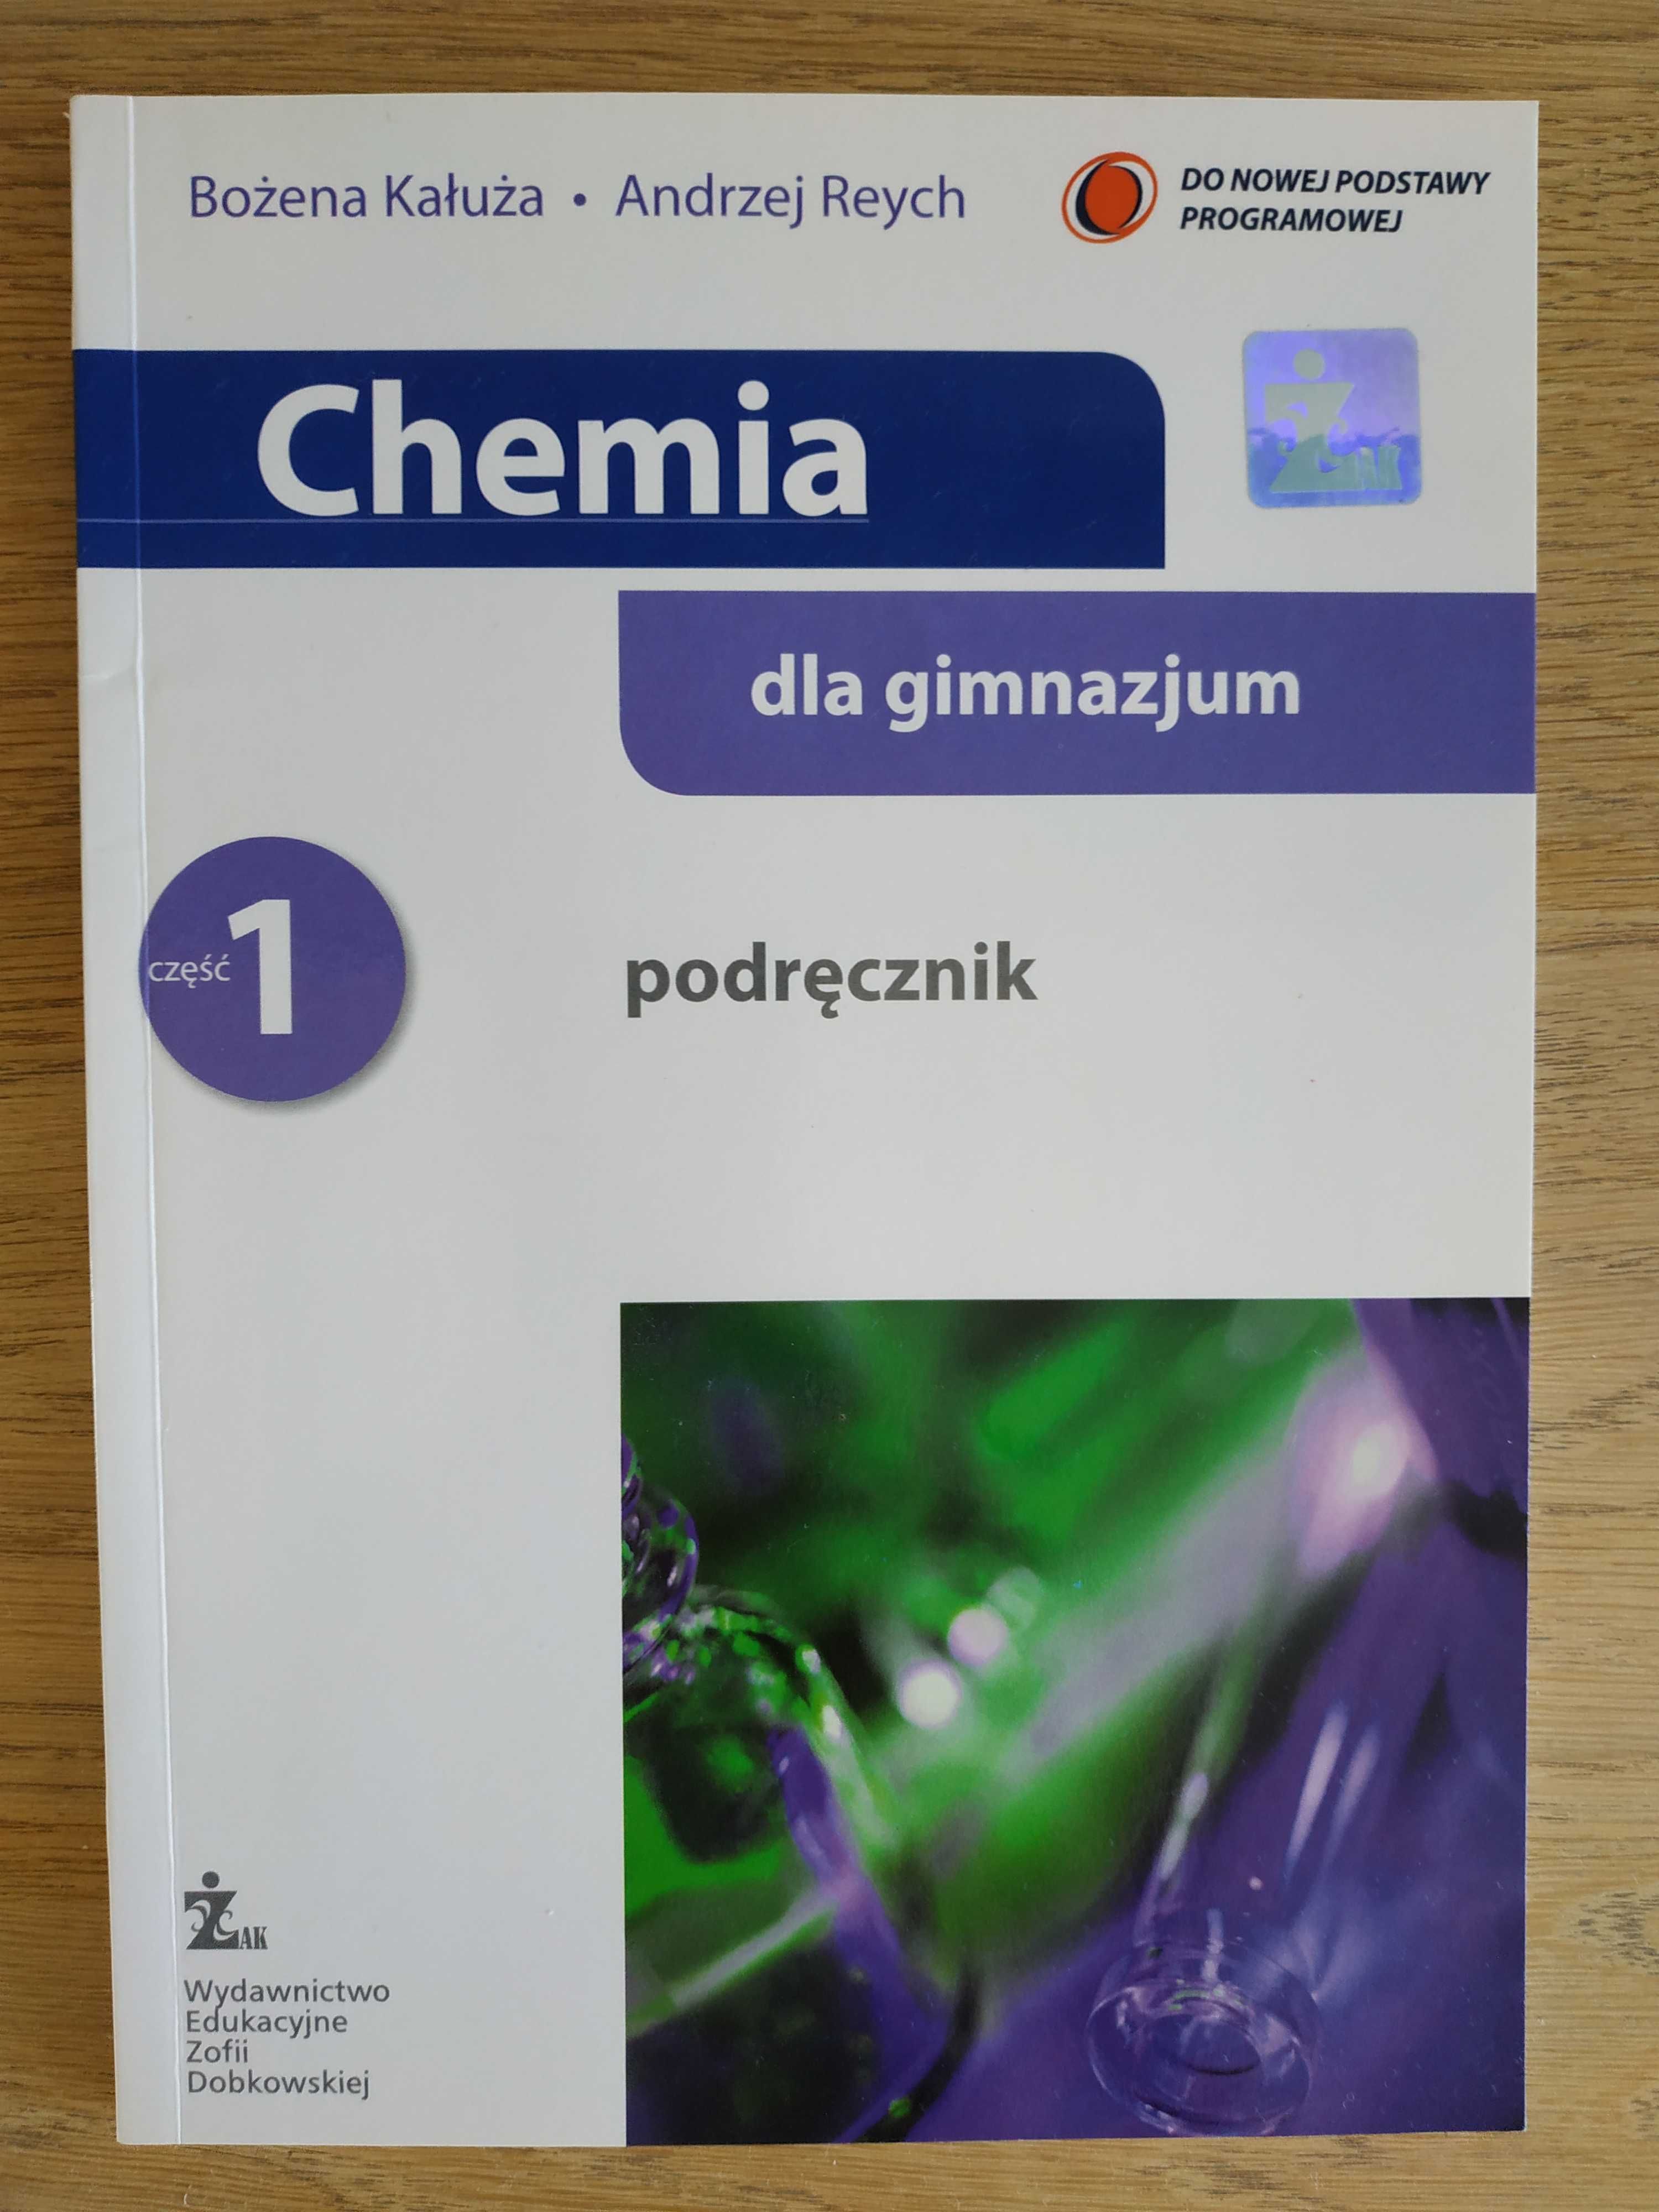 chemia 1 podręcznik, Żak gimnazjum